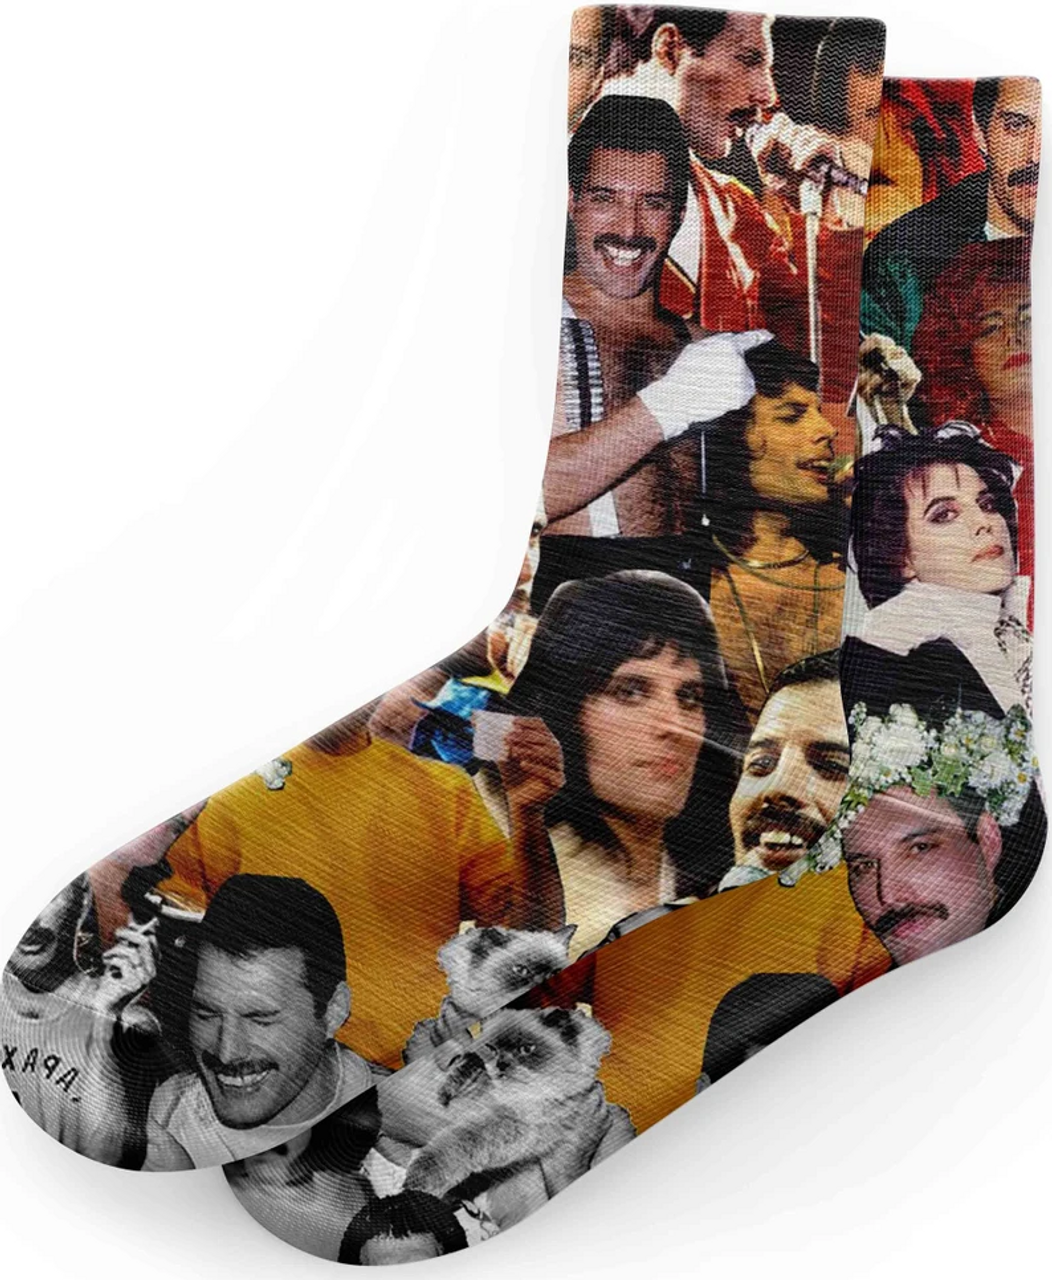 Pizza Socks, Pepperoni Pizza Socks, Funny Socks, Cool Socks, Fun Socks, Crazy  Socks, Funky Socks, Colorful